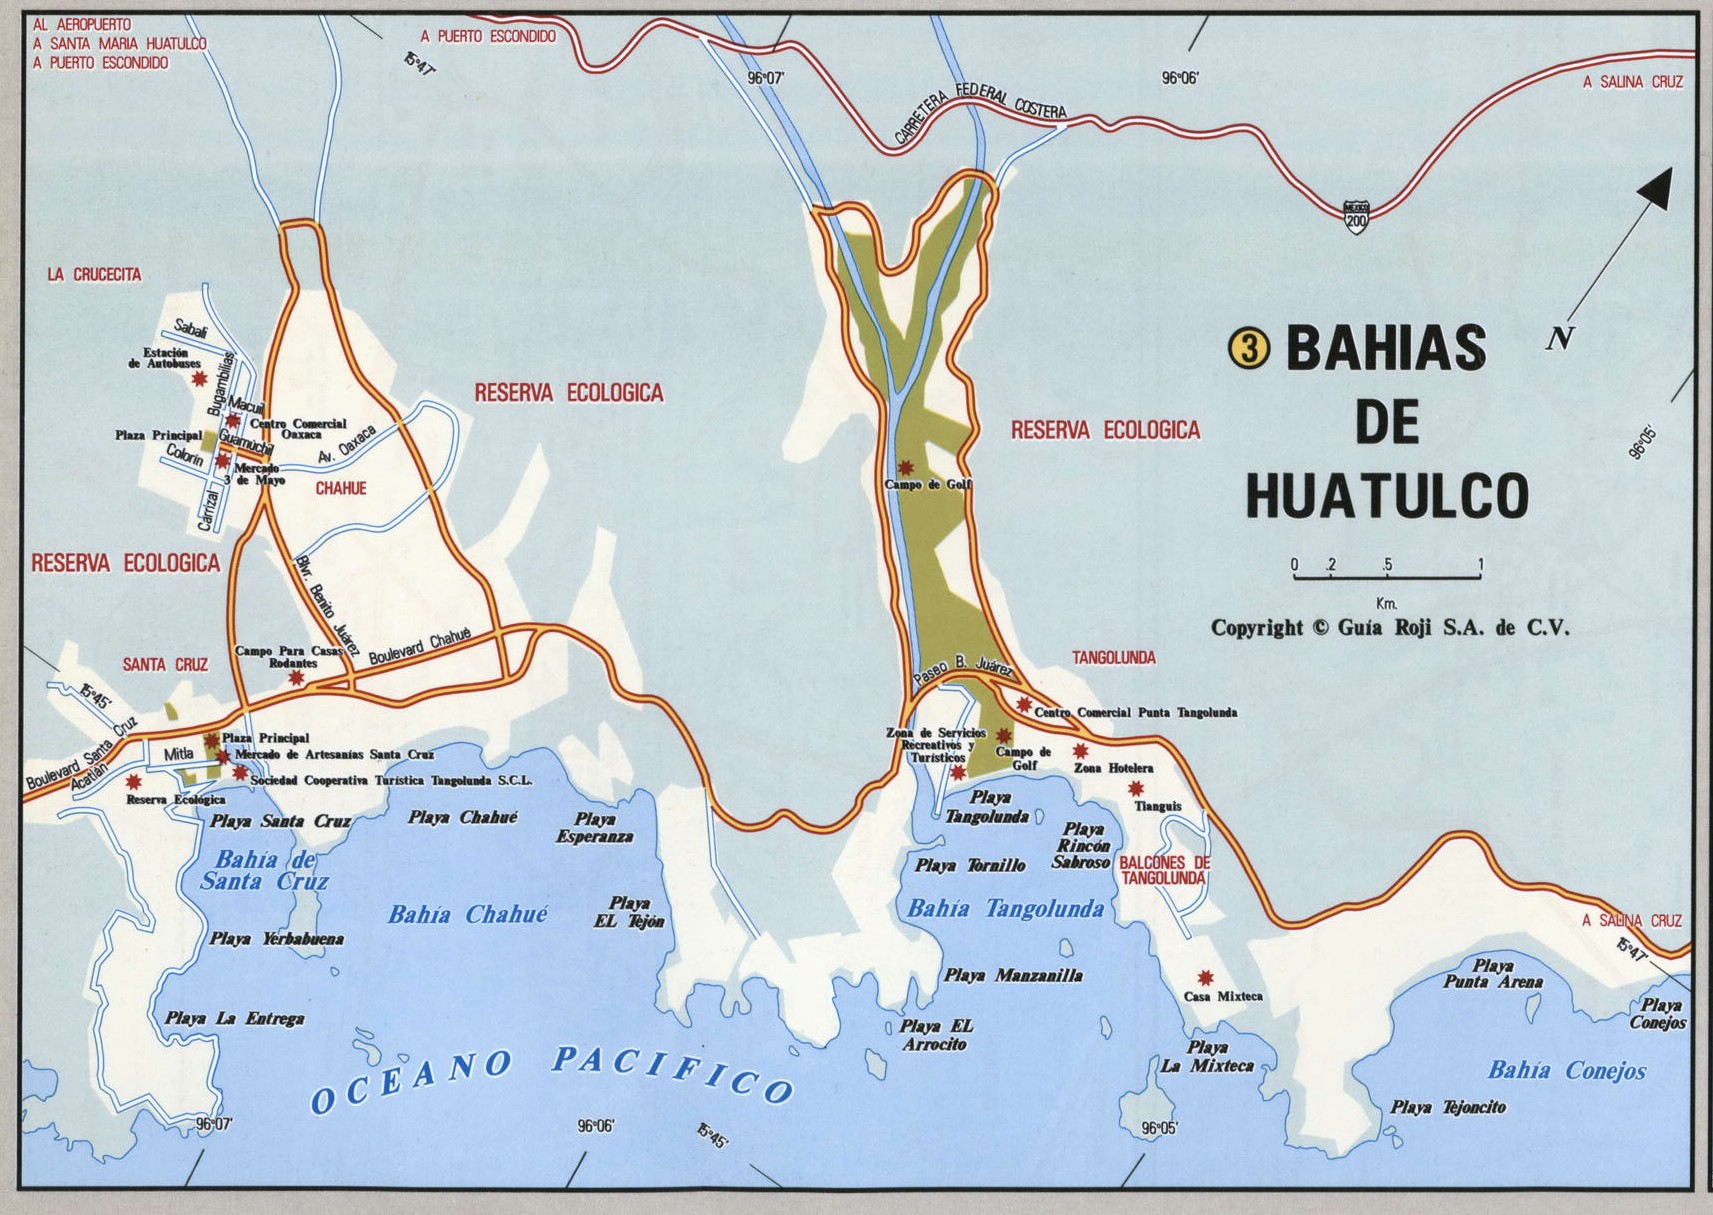 Bahias de Huatulco city map